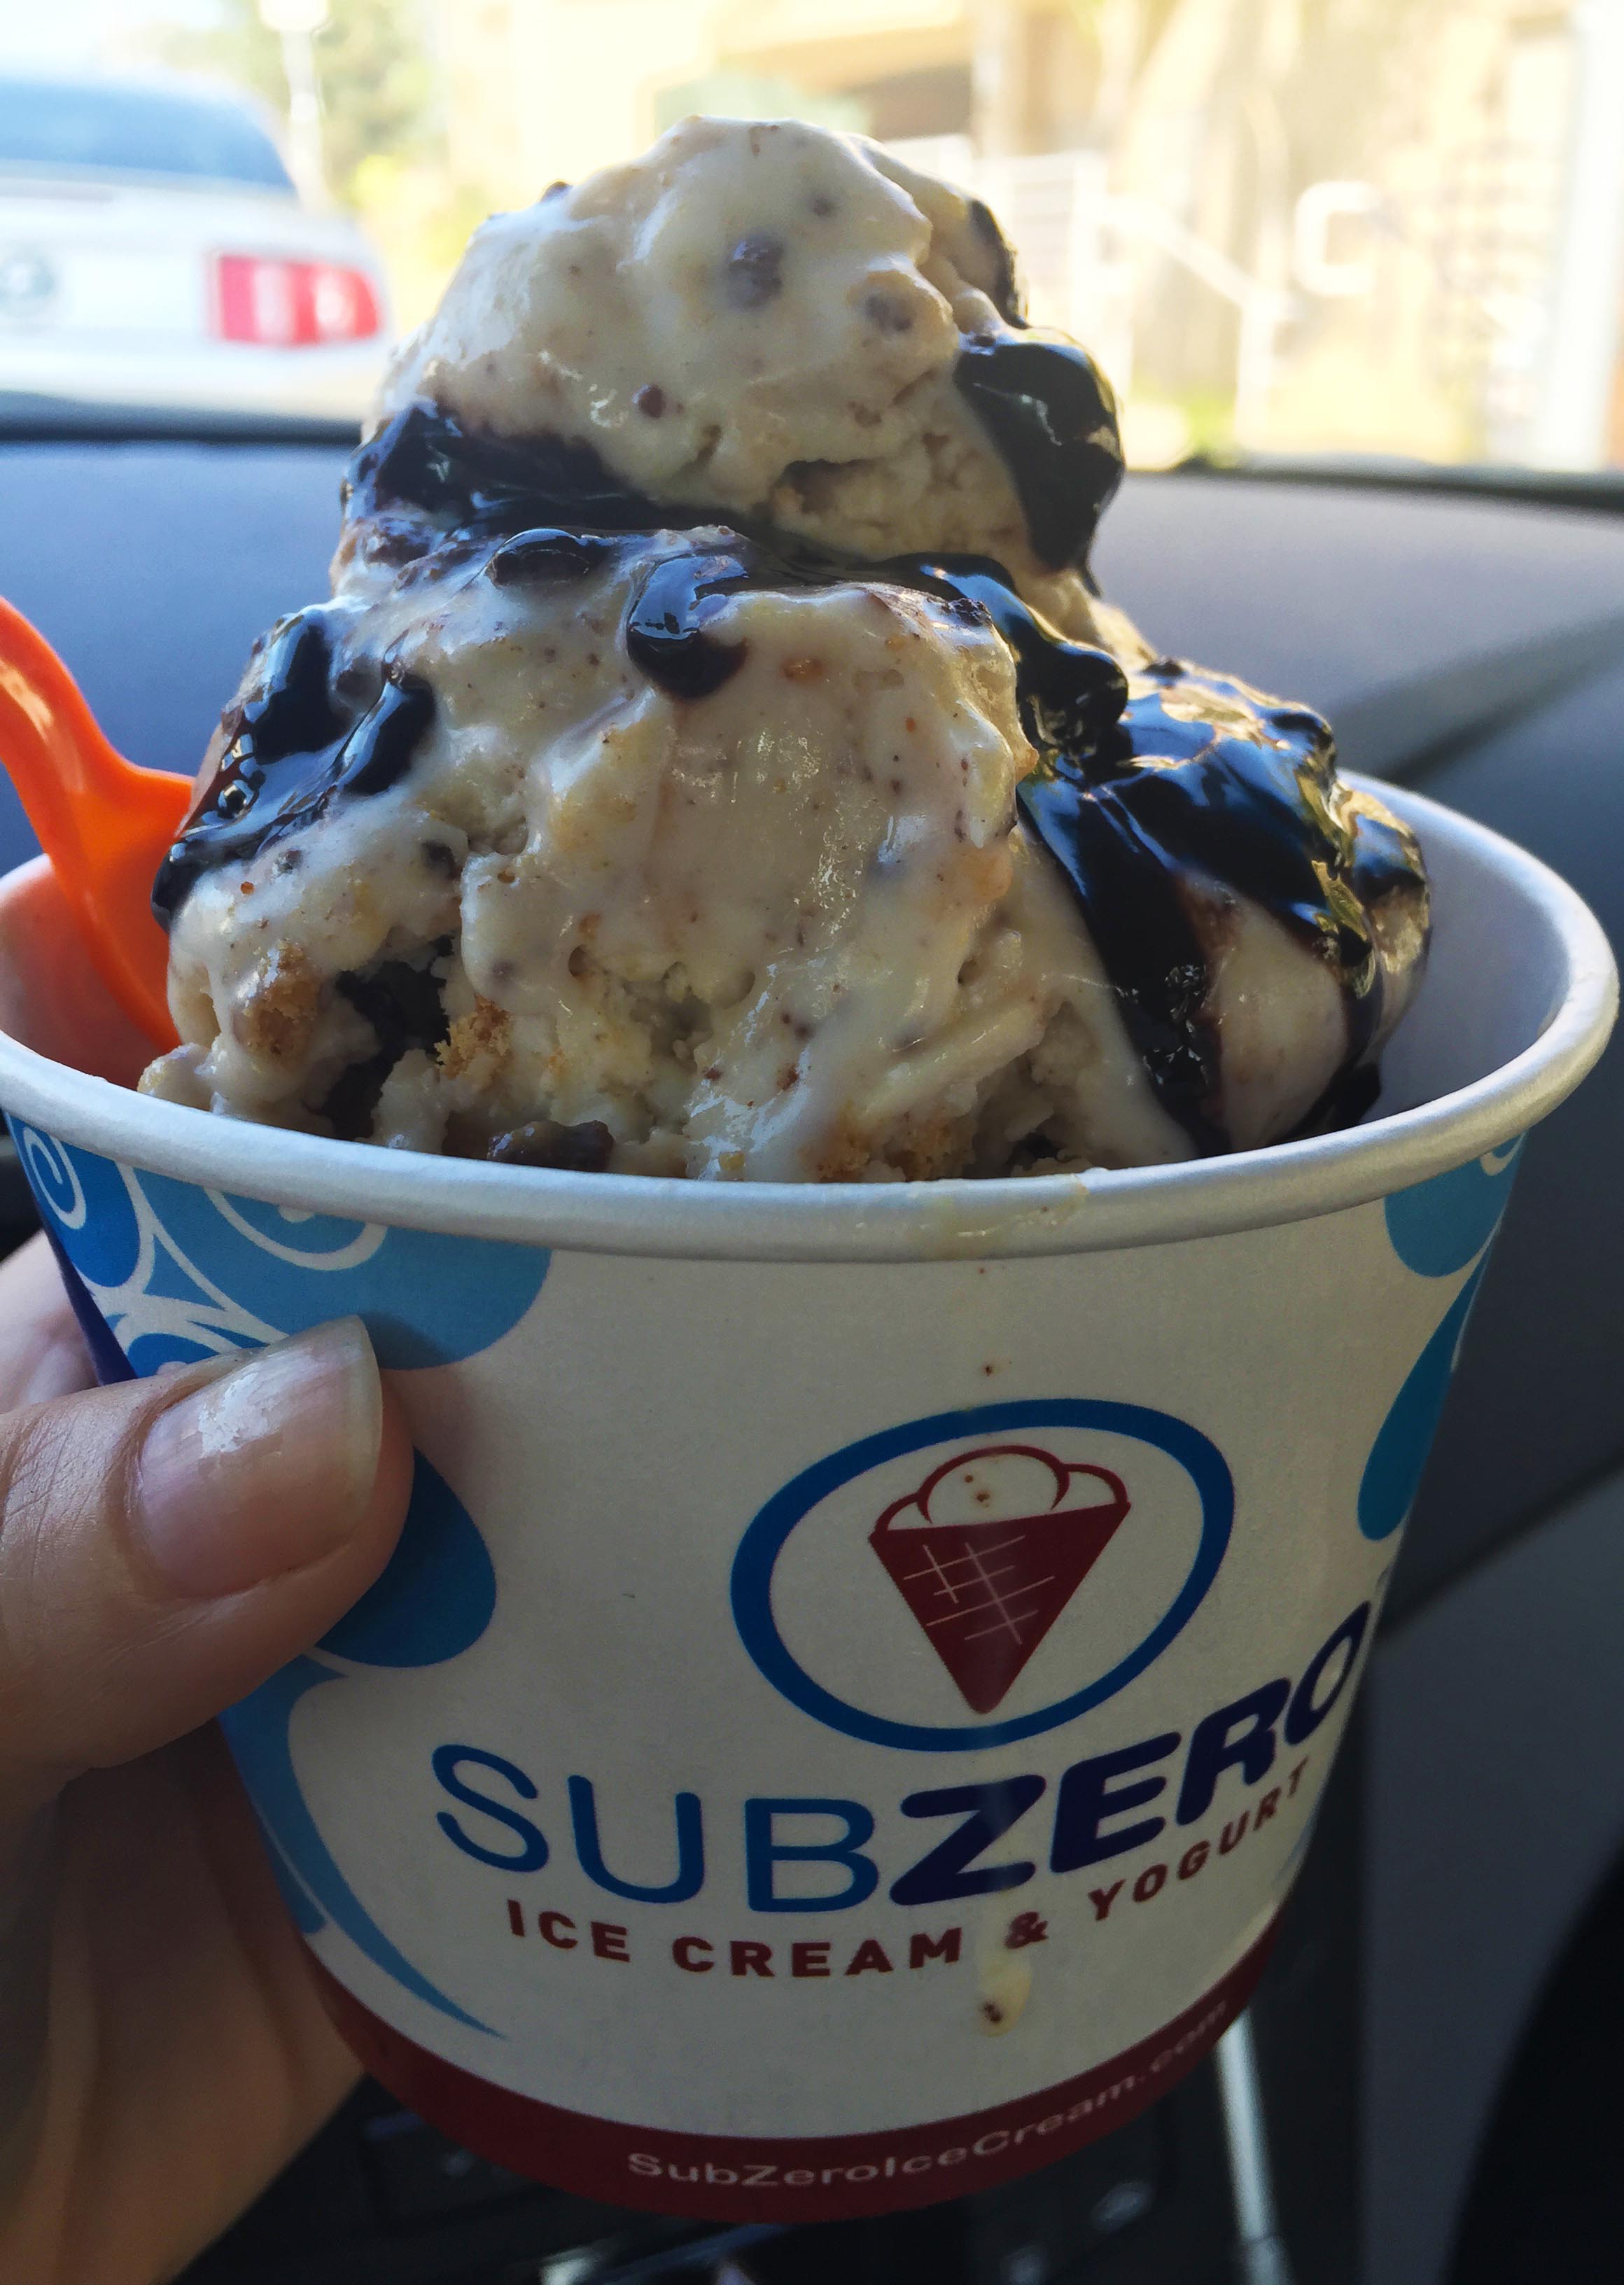 Sub Zero ice cream